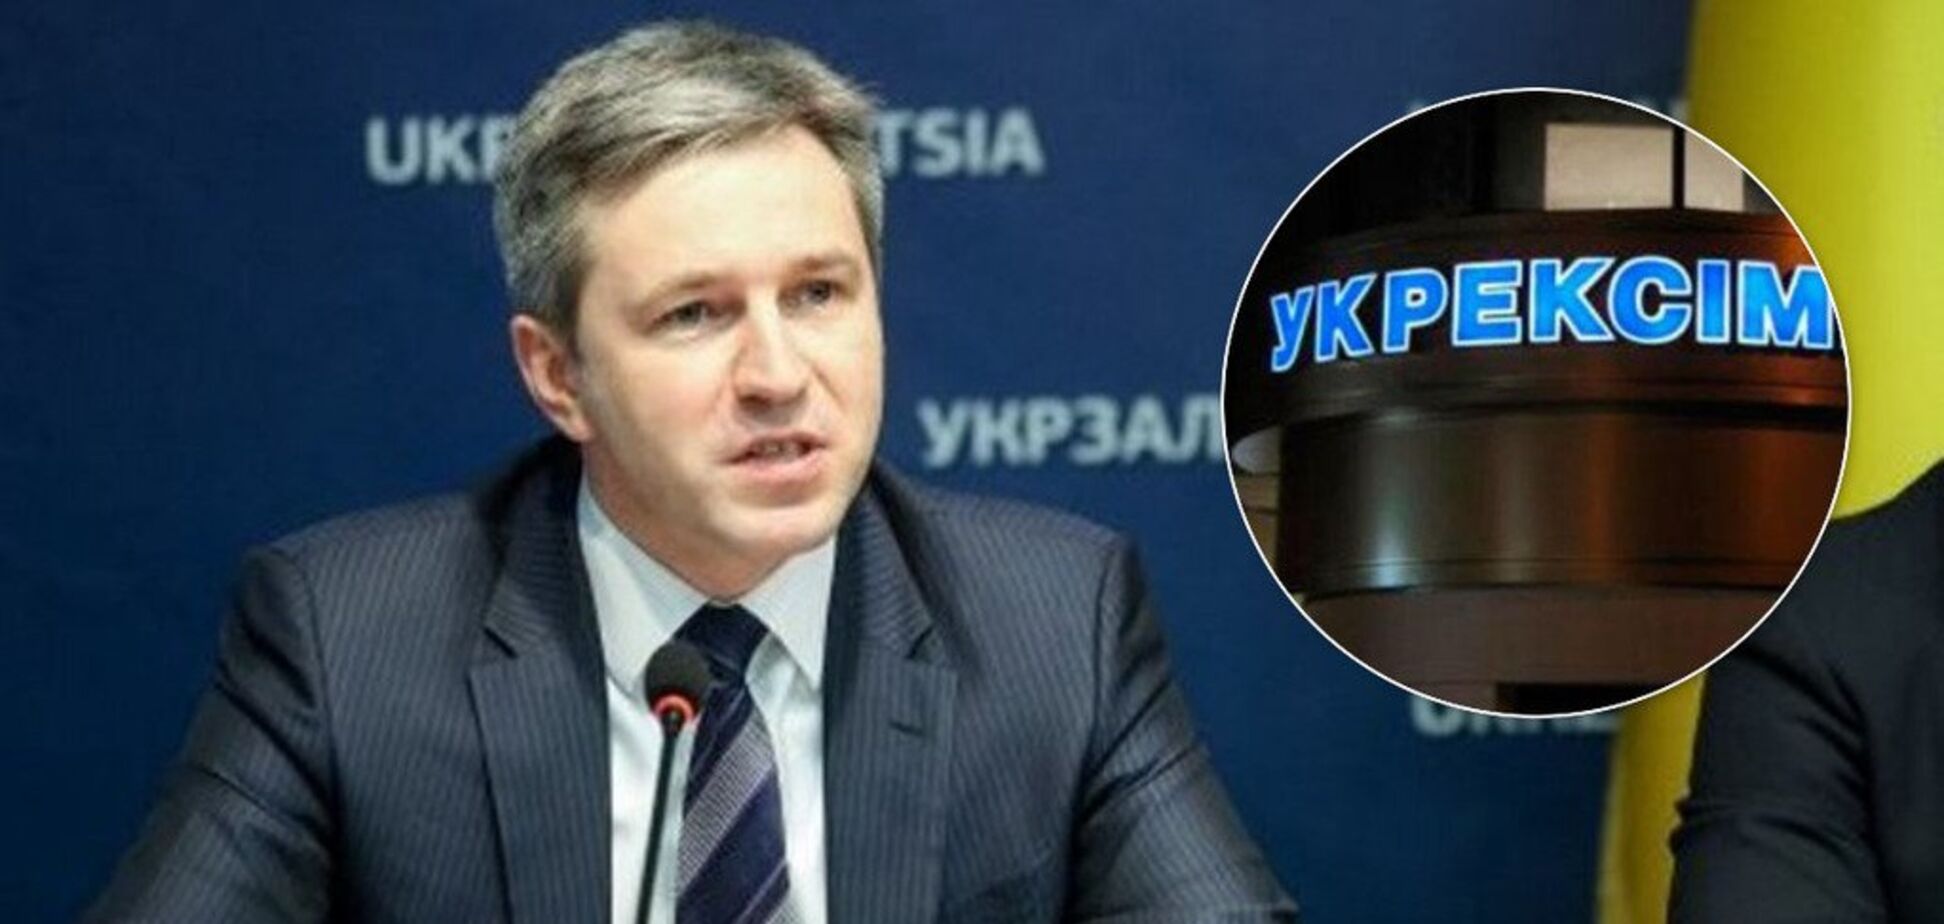 'Викрадення' глави великого банку в Києві: розкрито нові деталі